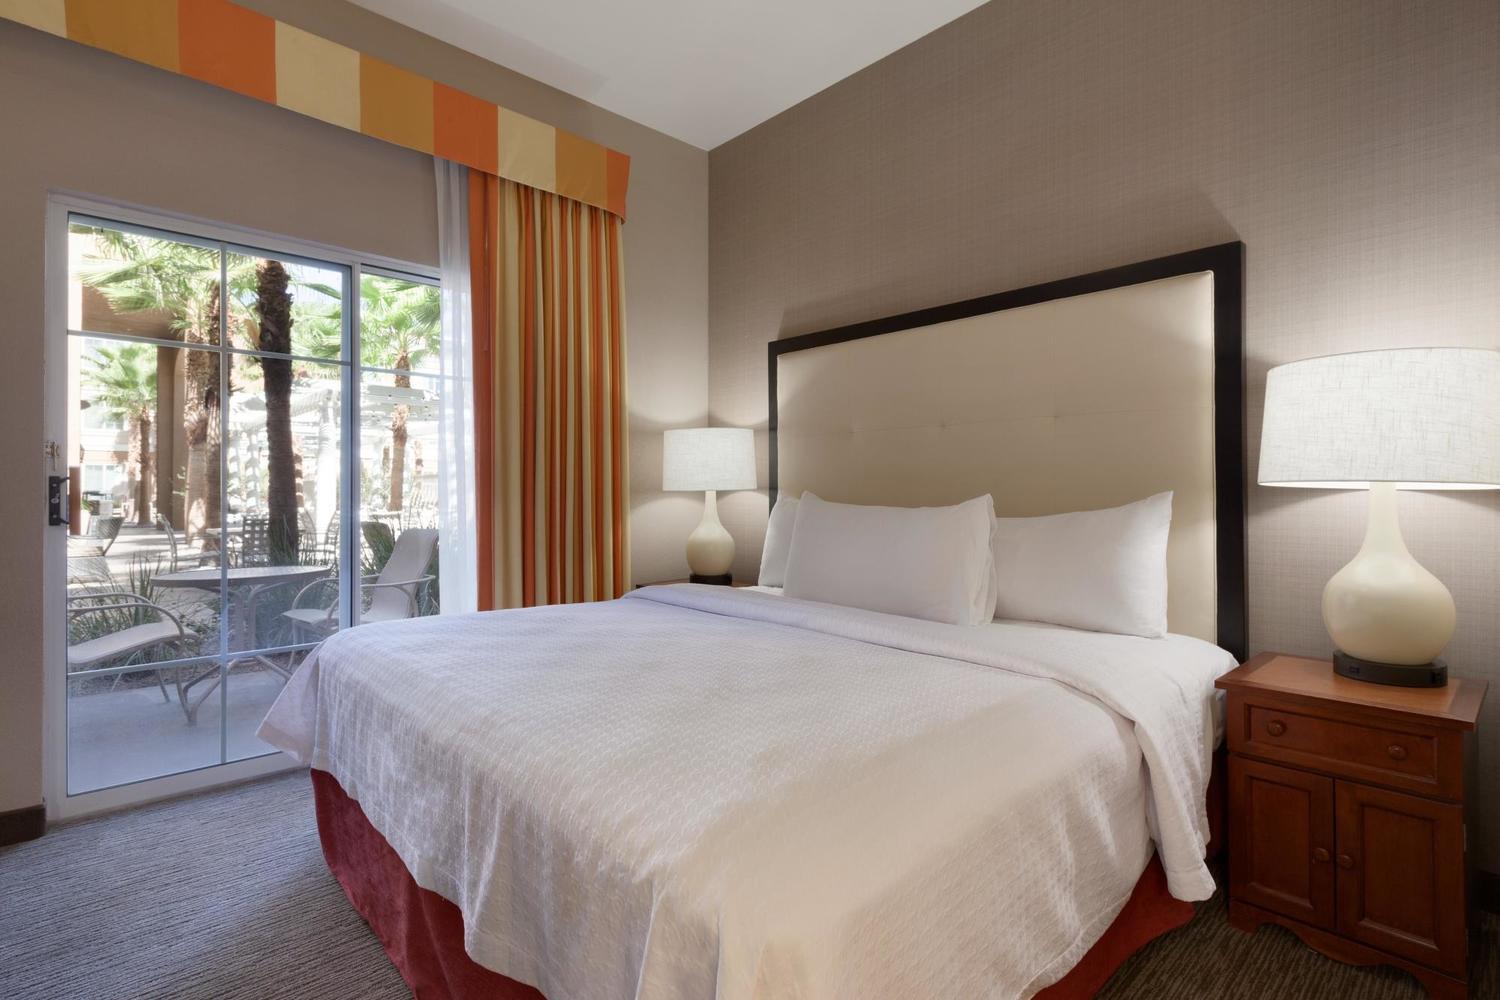 Homewood Suites by Hilton La Quinta, La Quinta, CA Jobs | Hospitality